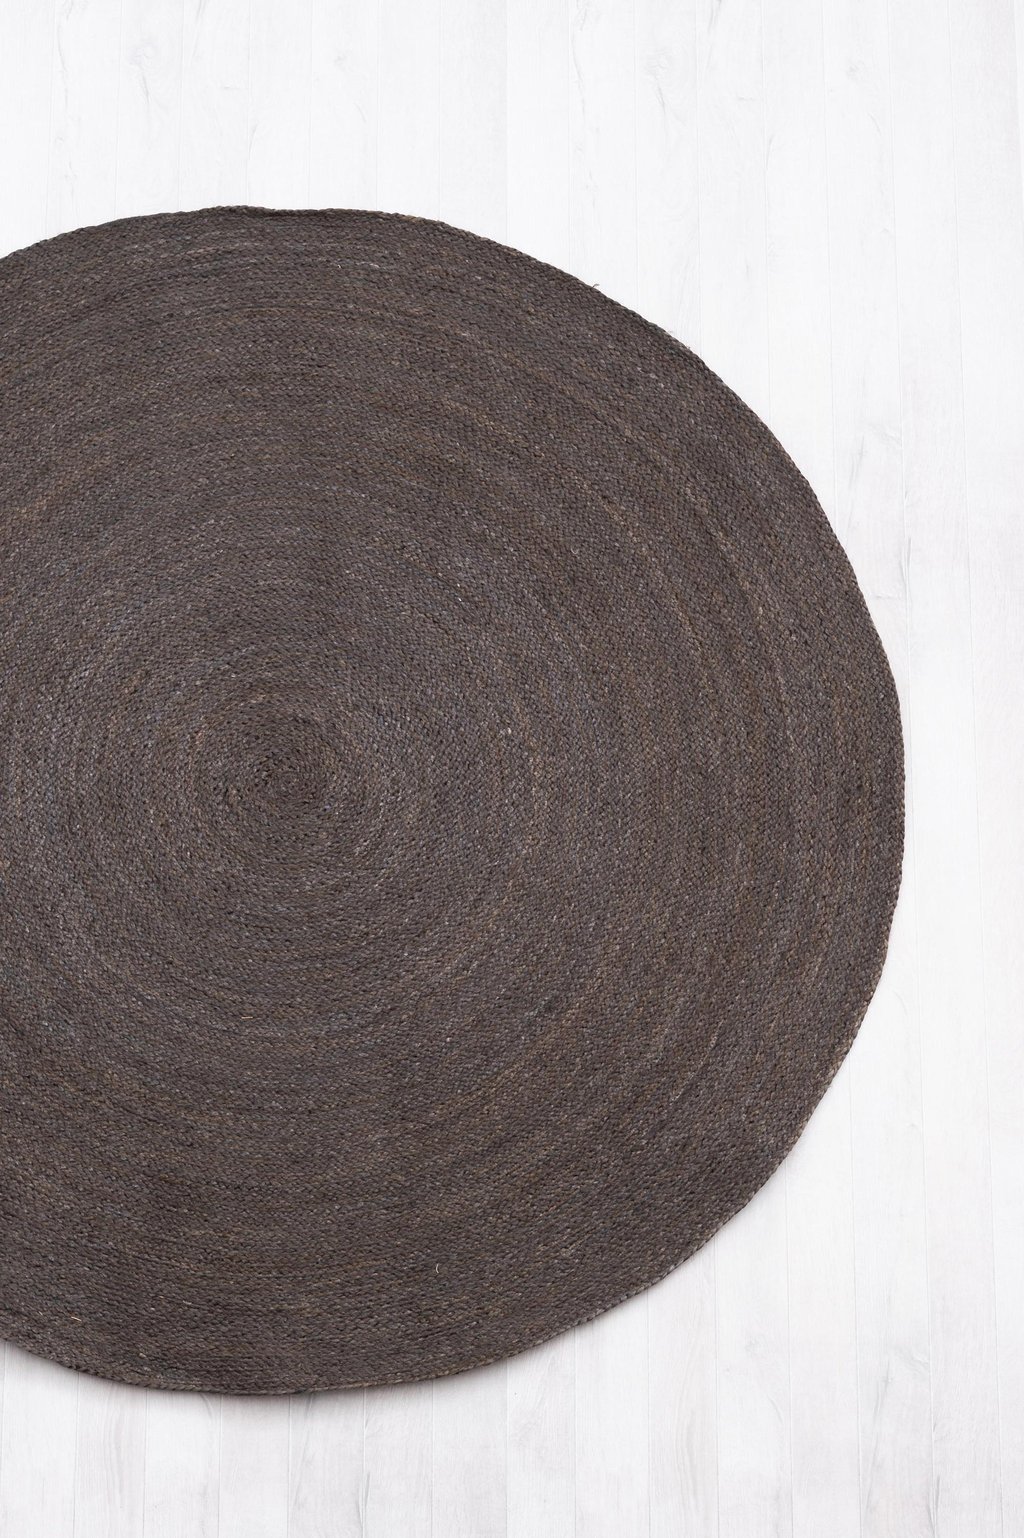 FanniK Rauha matto pyöreä ⌀ 150 cm, tumman harmaa / hiili